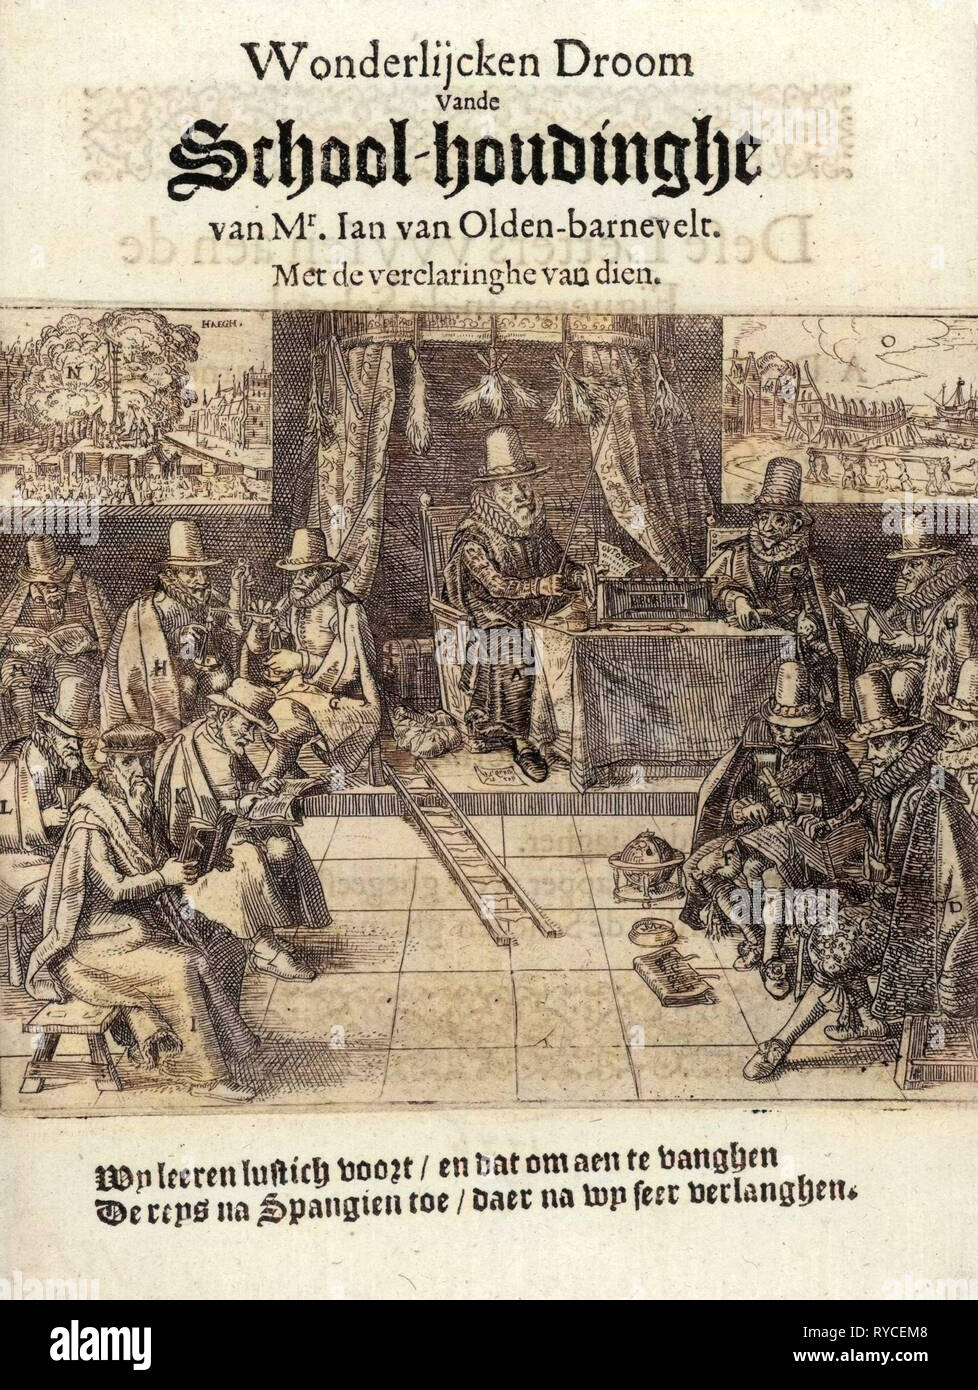 Imprimer titre de la brochure en 1618, intitulé 'Wonderlijcken houdinghe-École Vande Droom van M. Jan van Oldenbarnevelt', Anonyme, 1618 Banque D'Images